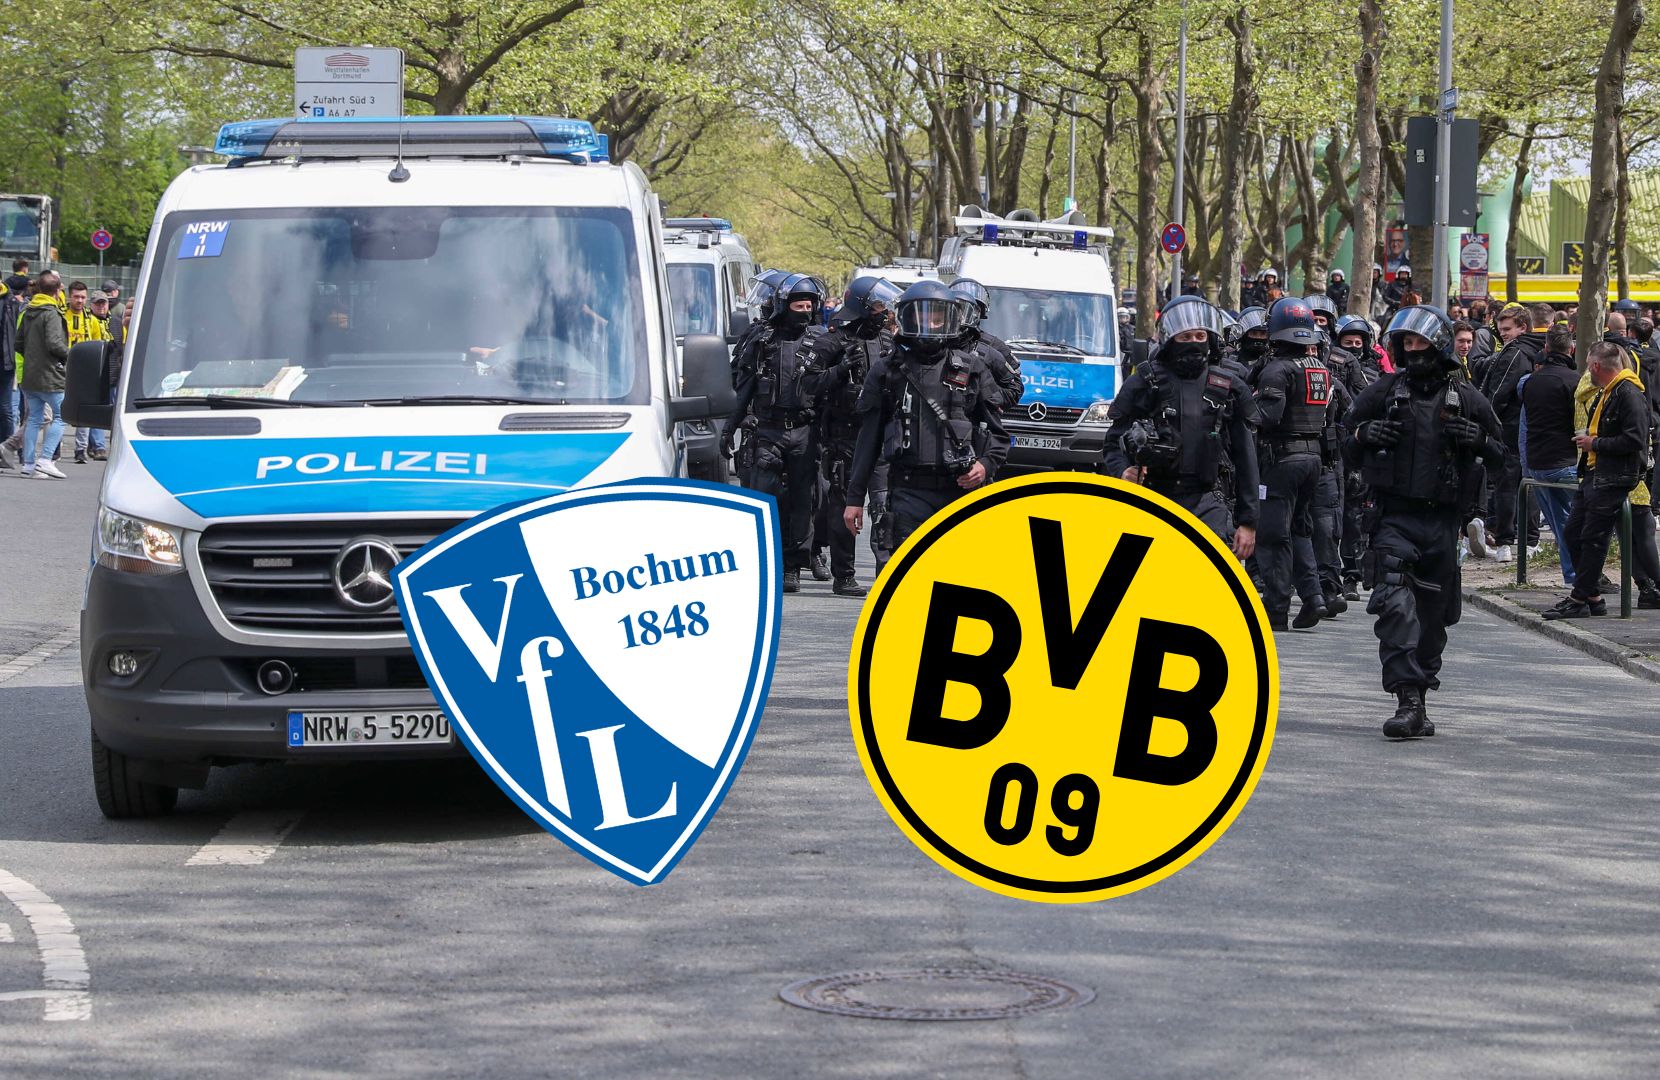 VfL-Bochum-Borussia-Dortmund-Nach-h-sslicher-Aktion-Polizei-vor-Risikospiel-mit-dringender-Warnung